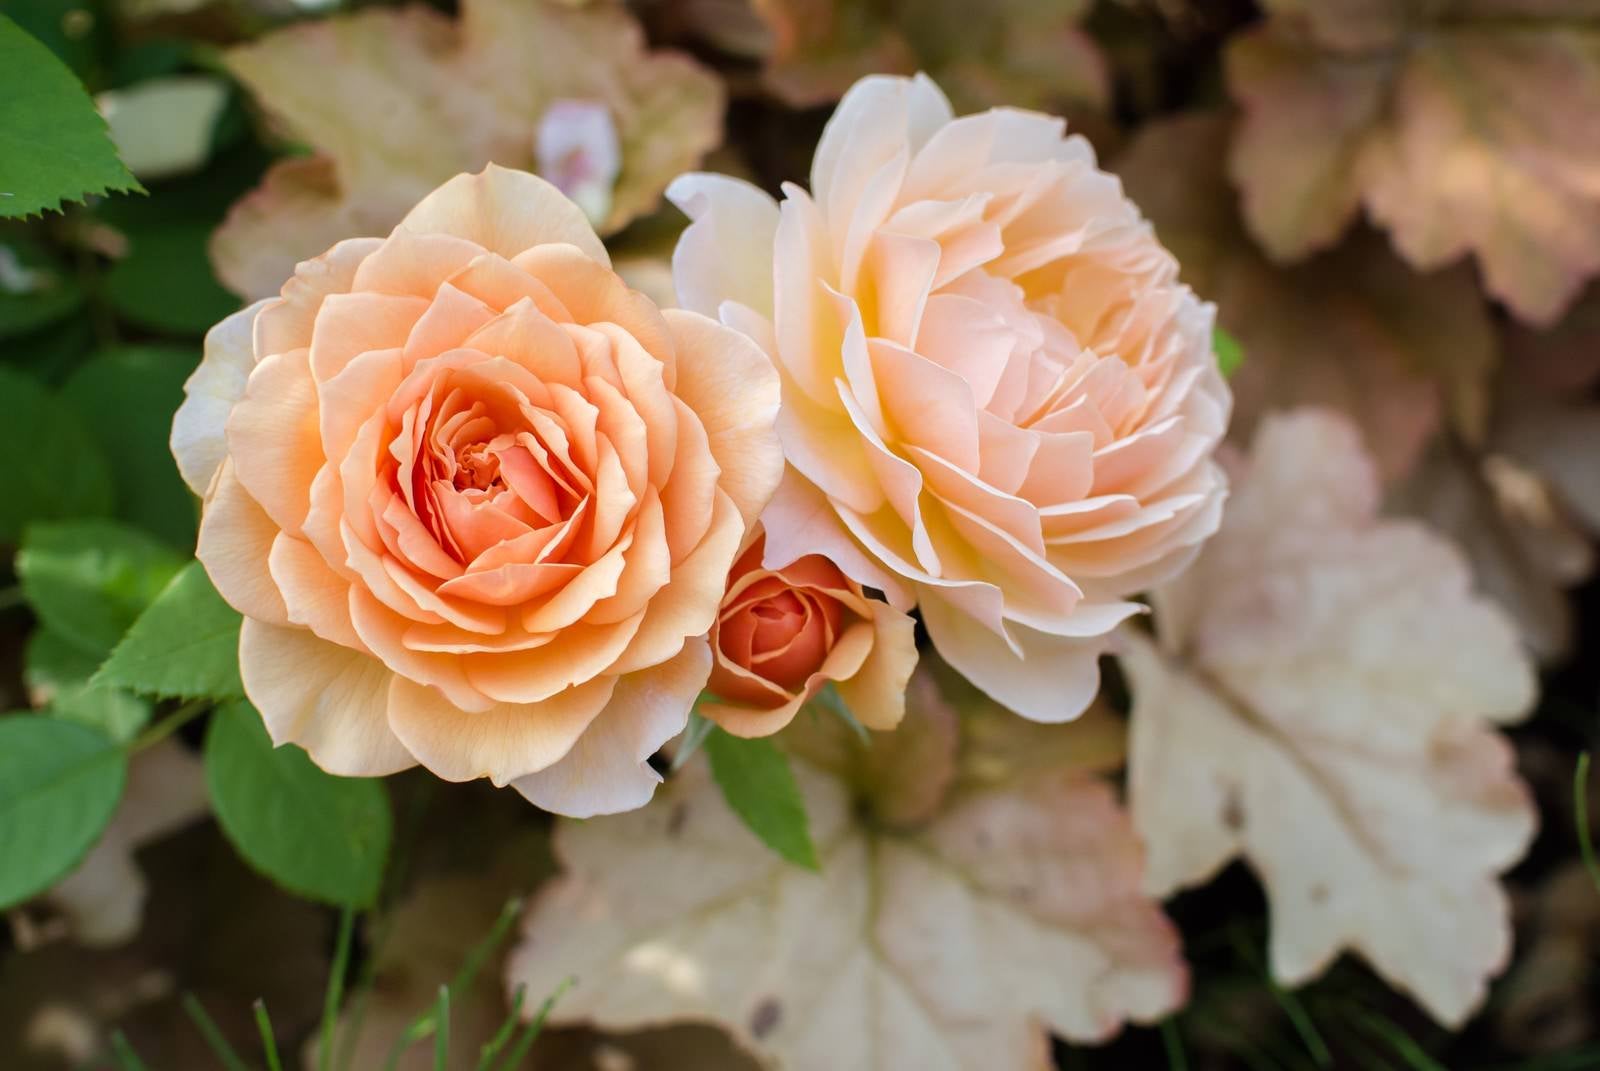 「オレンジ色のバラとヒューケラの葉」の写真